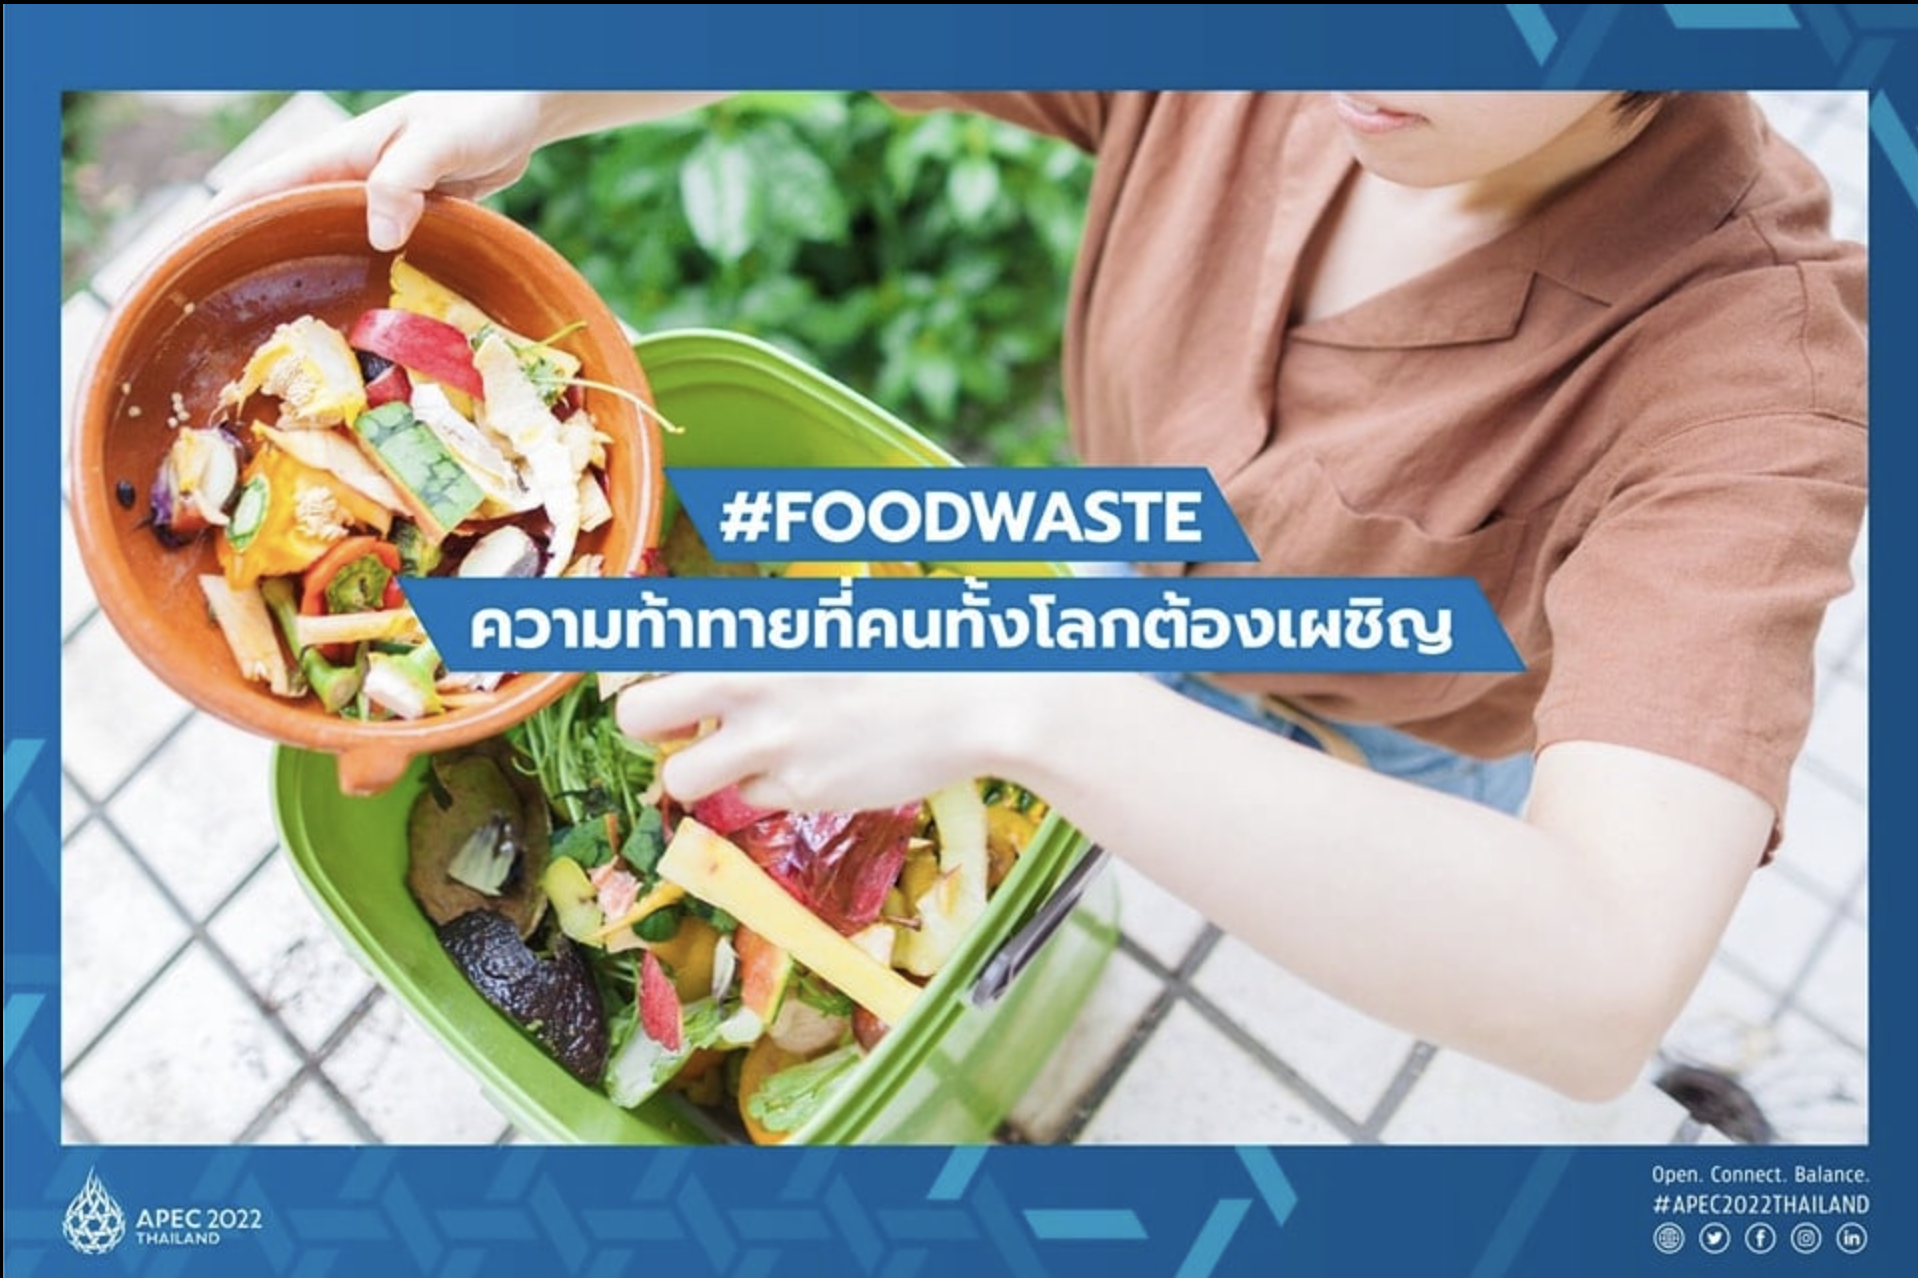 “ขยะอาหาร” (FOOD WASTE) ปัญหาที่ท้าทายมวลมนุษยชาติ